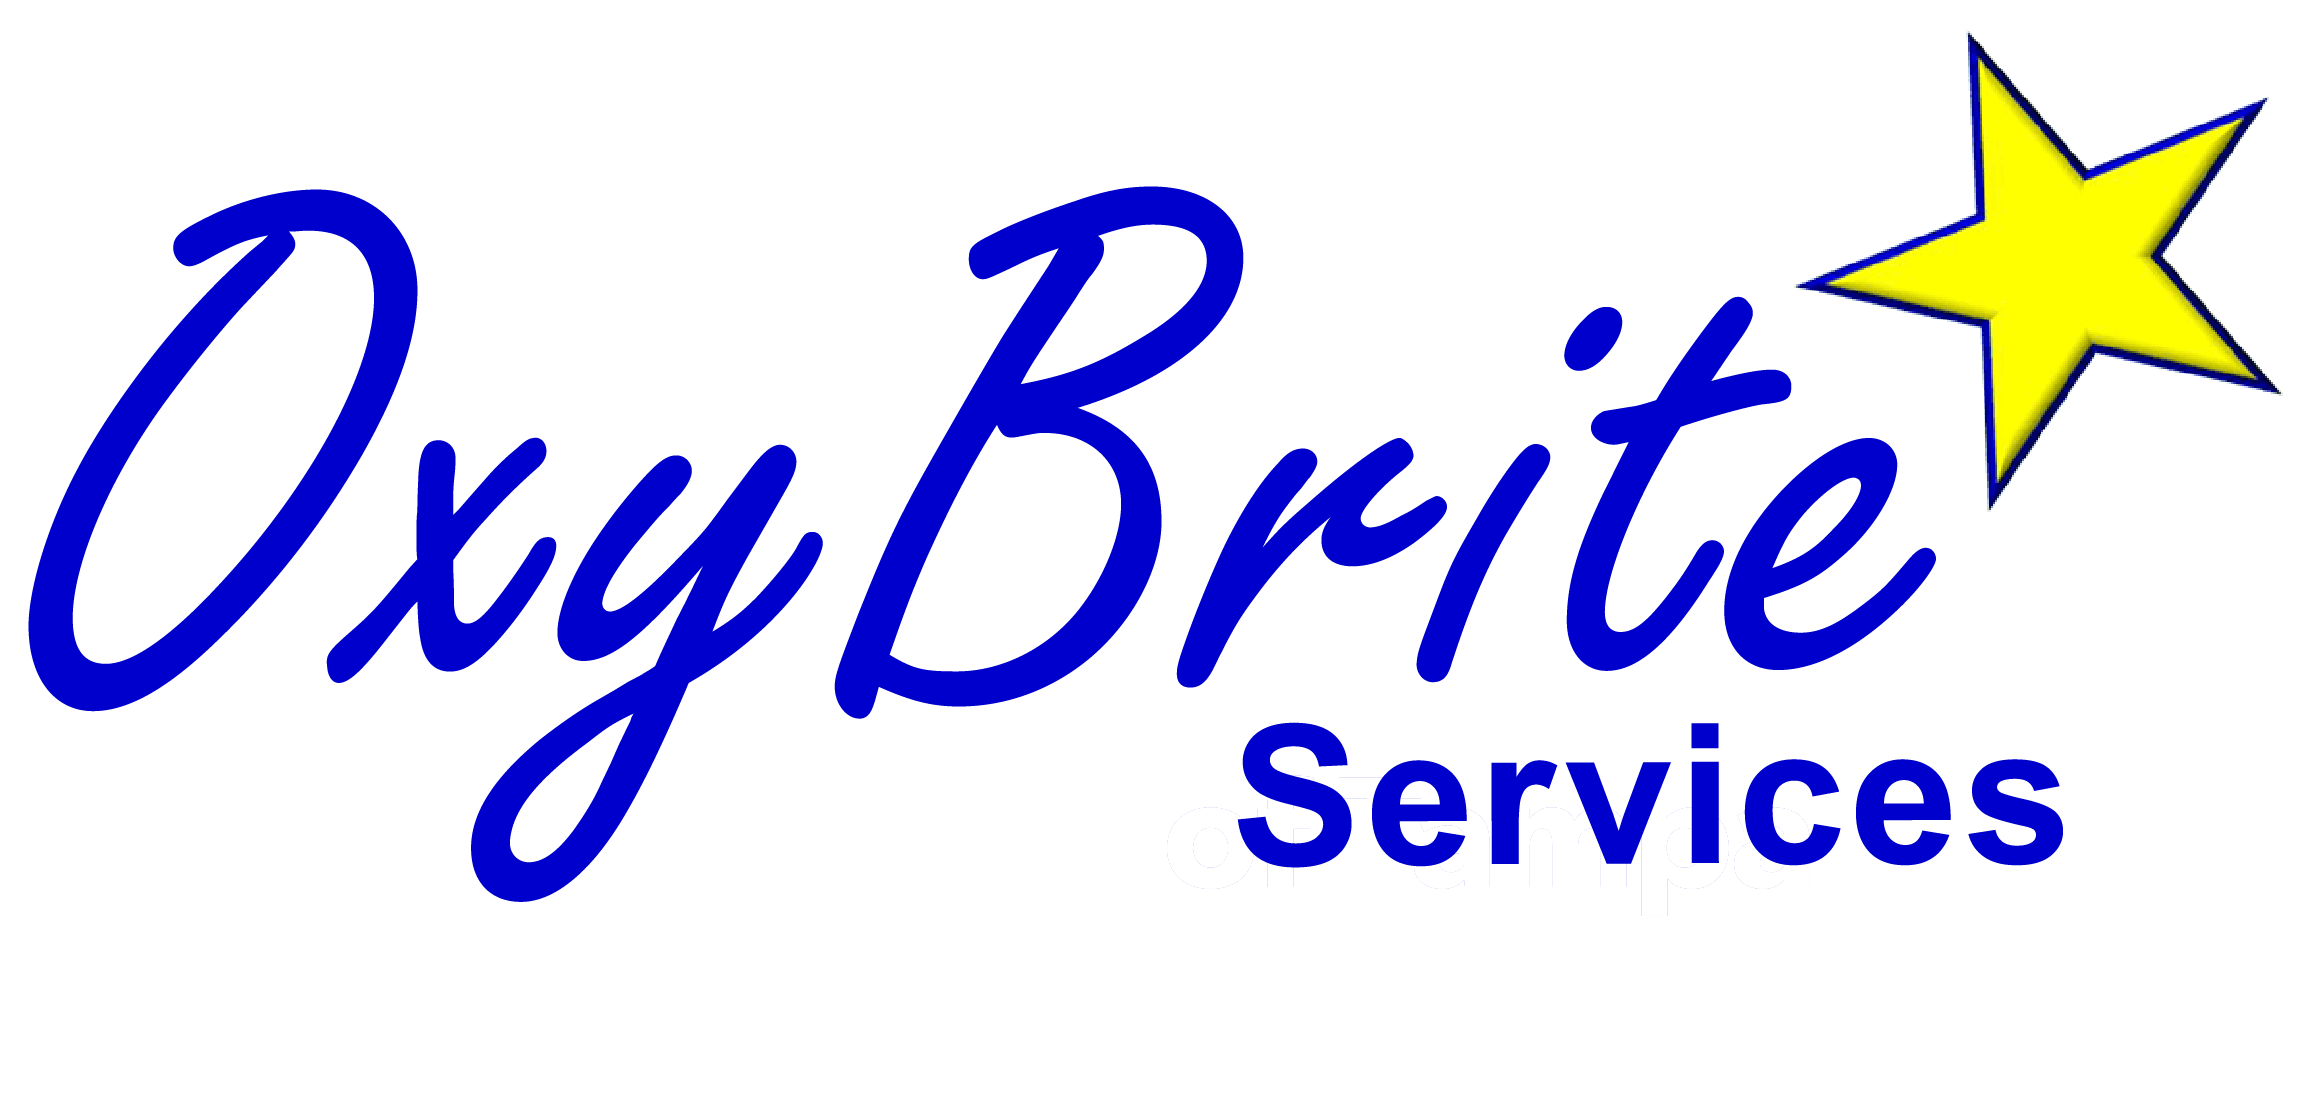 Oxybrite Services, Tampa, Florida